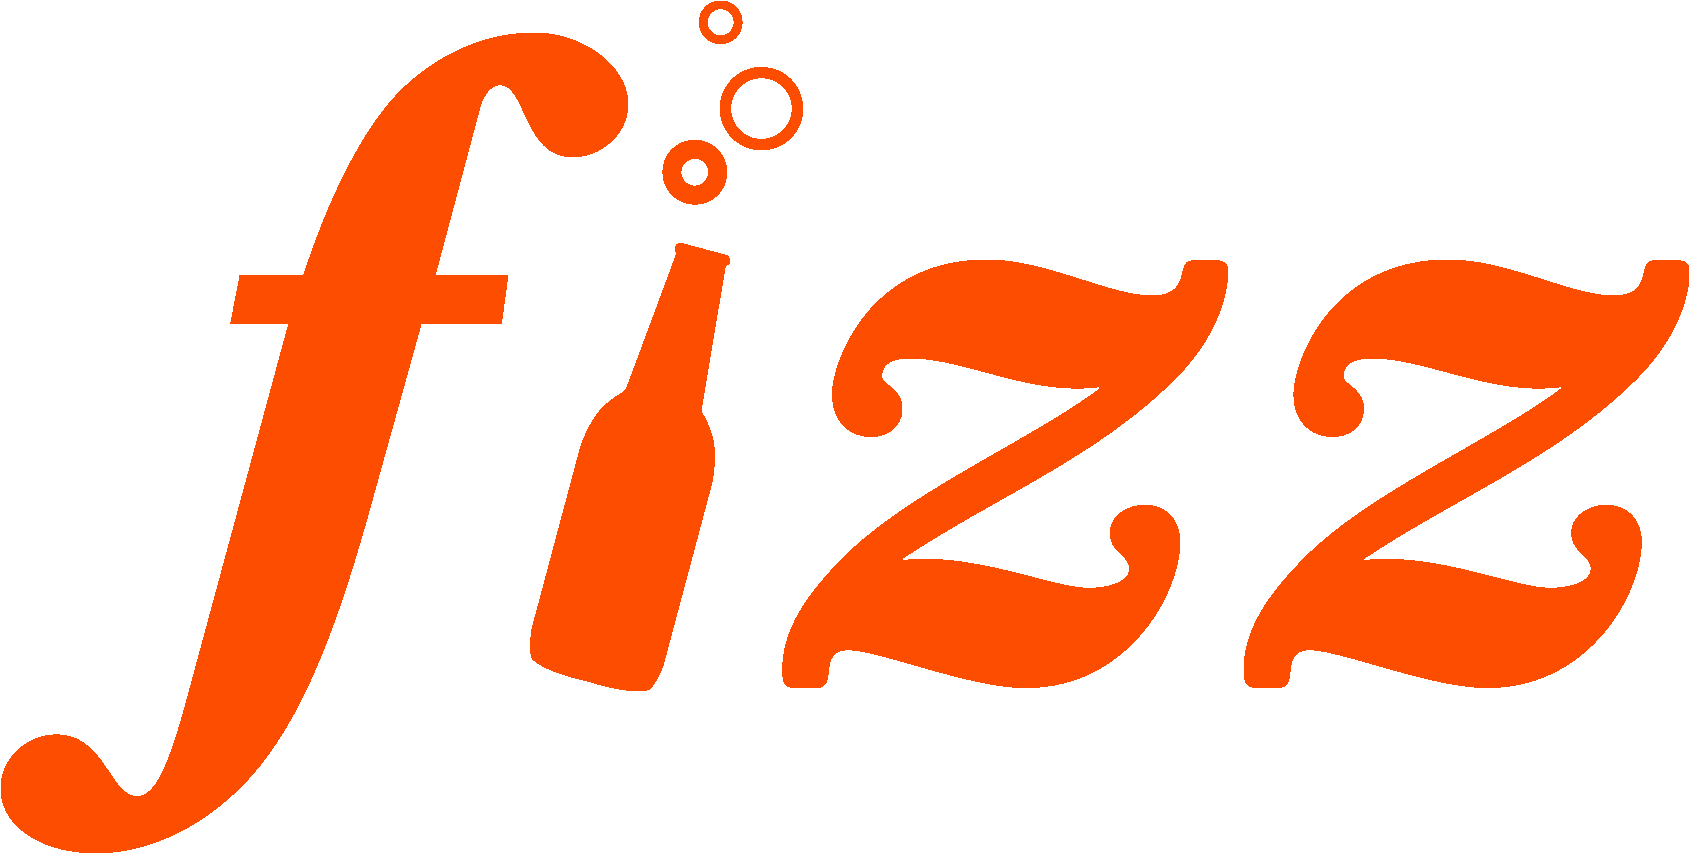 Logos Graphic Design Cleveland Oh Rh Hellofizz Com - Fizz Logo (1688x900)